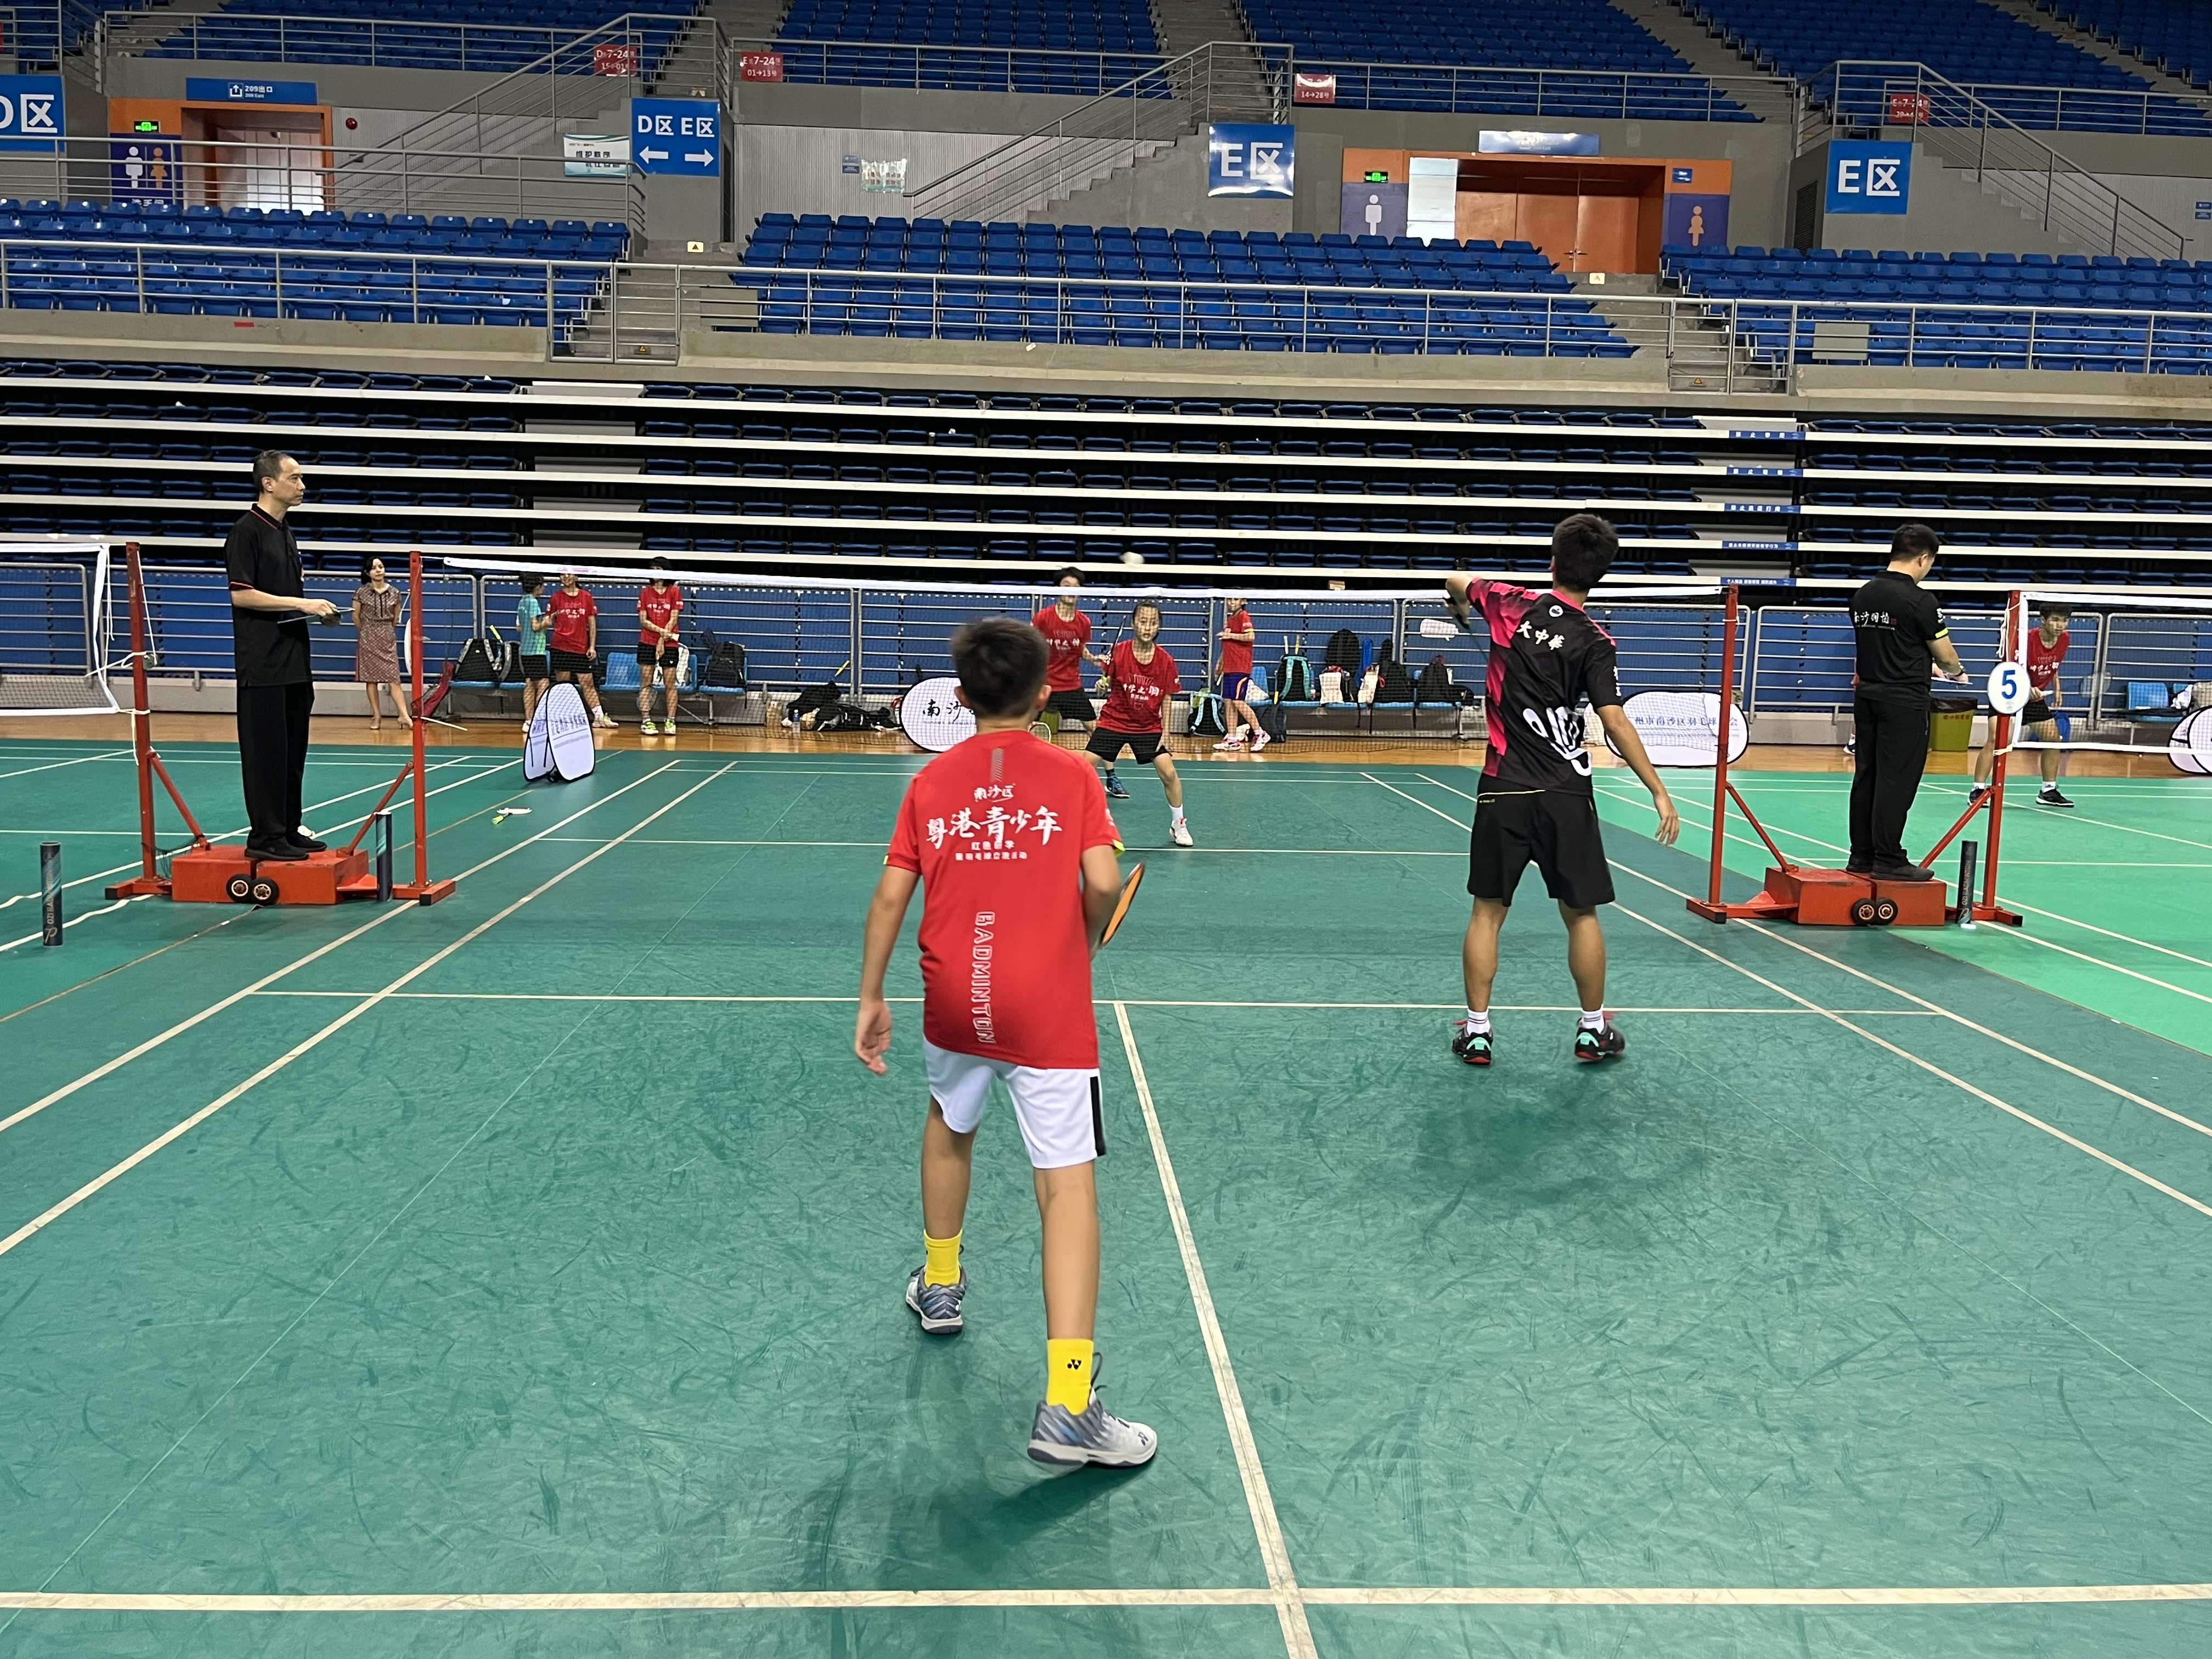 「紅色之旅 羽你同行」 粵港青少年紅色研學暨羽毛球交流活動在南沙舉辦